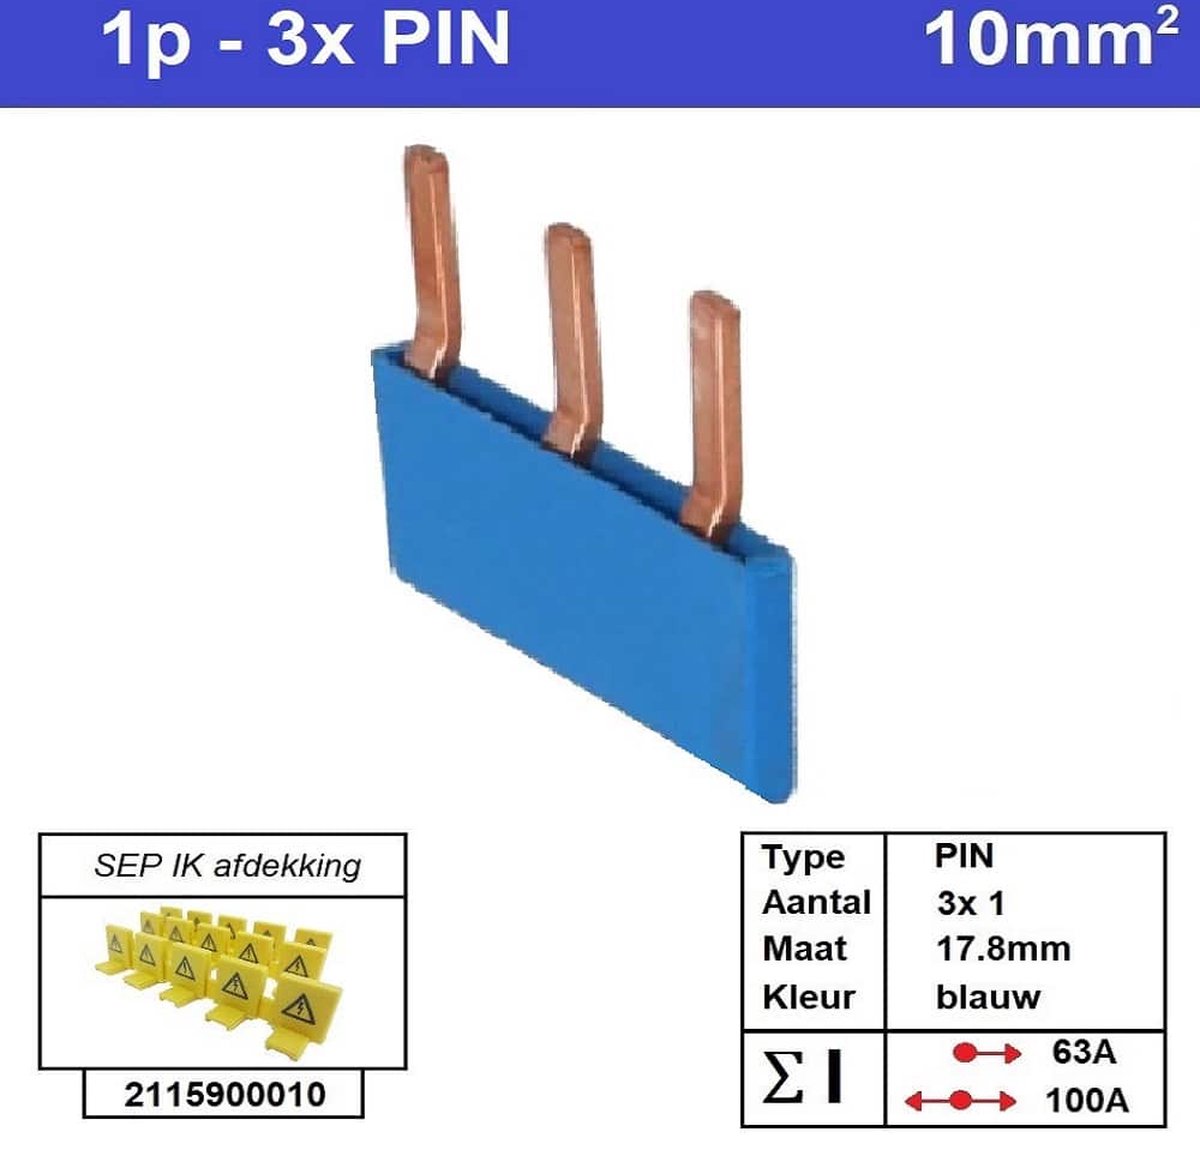 Sep kam pin 1 fase 3 polig 17,8mm blauw